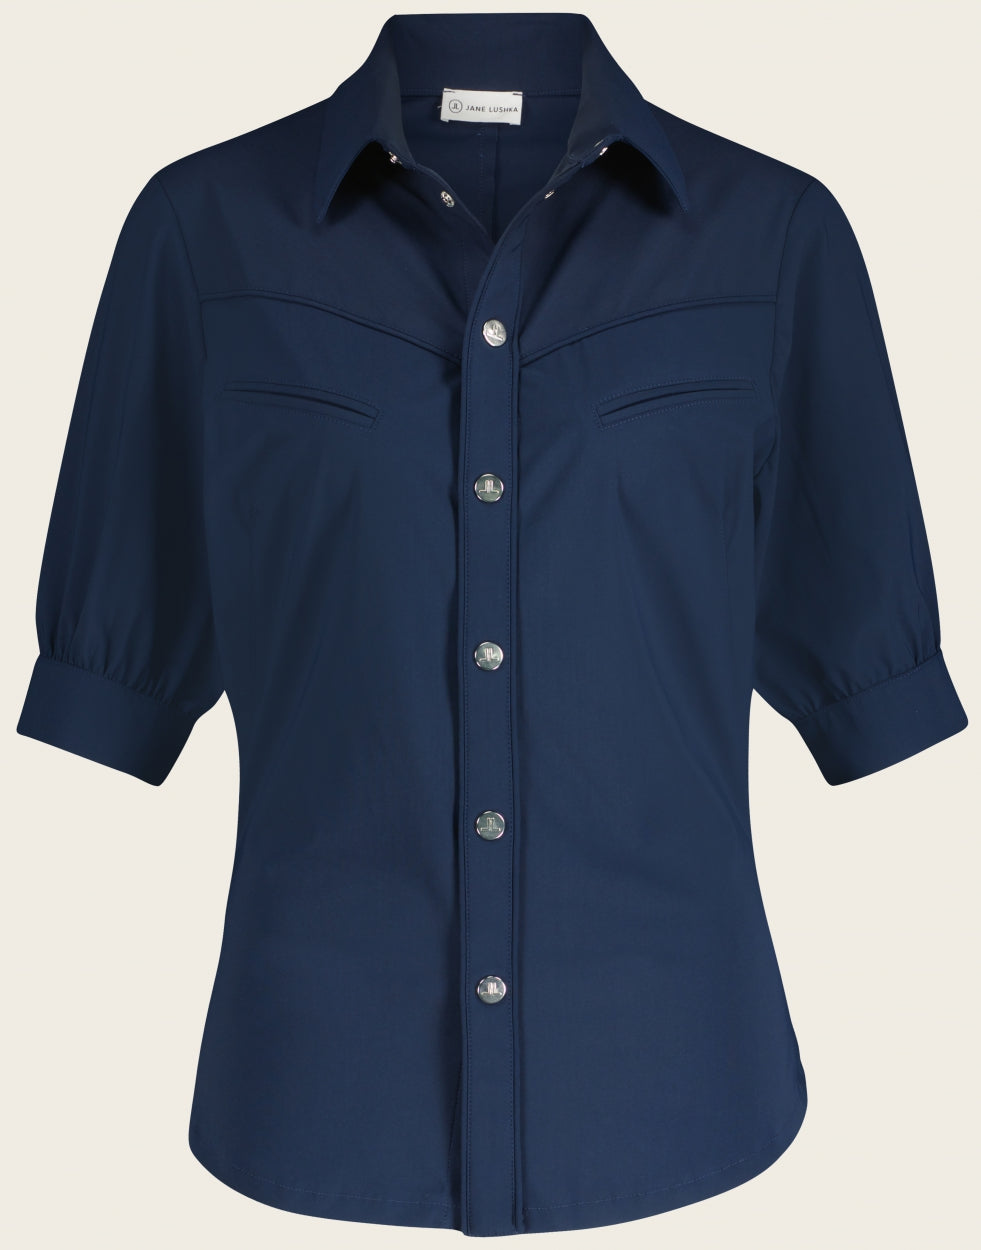 Donkerblauwe Blouse Lissy U7222550 van Jane Lushka is een getailleerde blouse in donkerblauw met kraag. Blouse heeft mooie naden en paspelzakken op de borst, drukknopen en korte mouwen met manchet en een knoop. Het model is aansluitend en loopt aan de onderkant rond. Combineer deze met Shorts Yana in dezelfde donkerblauwe kleur. 